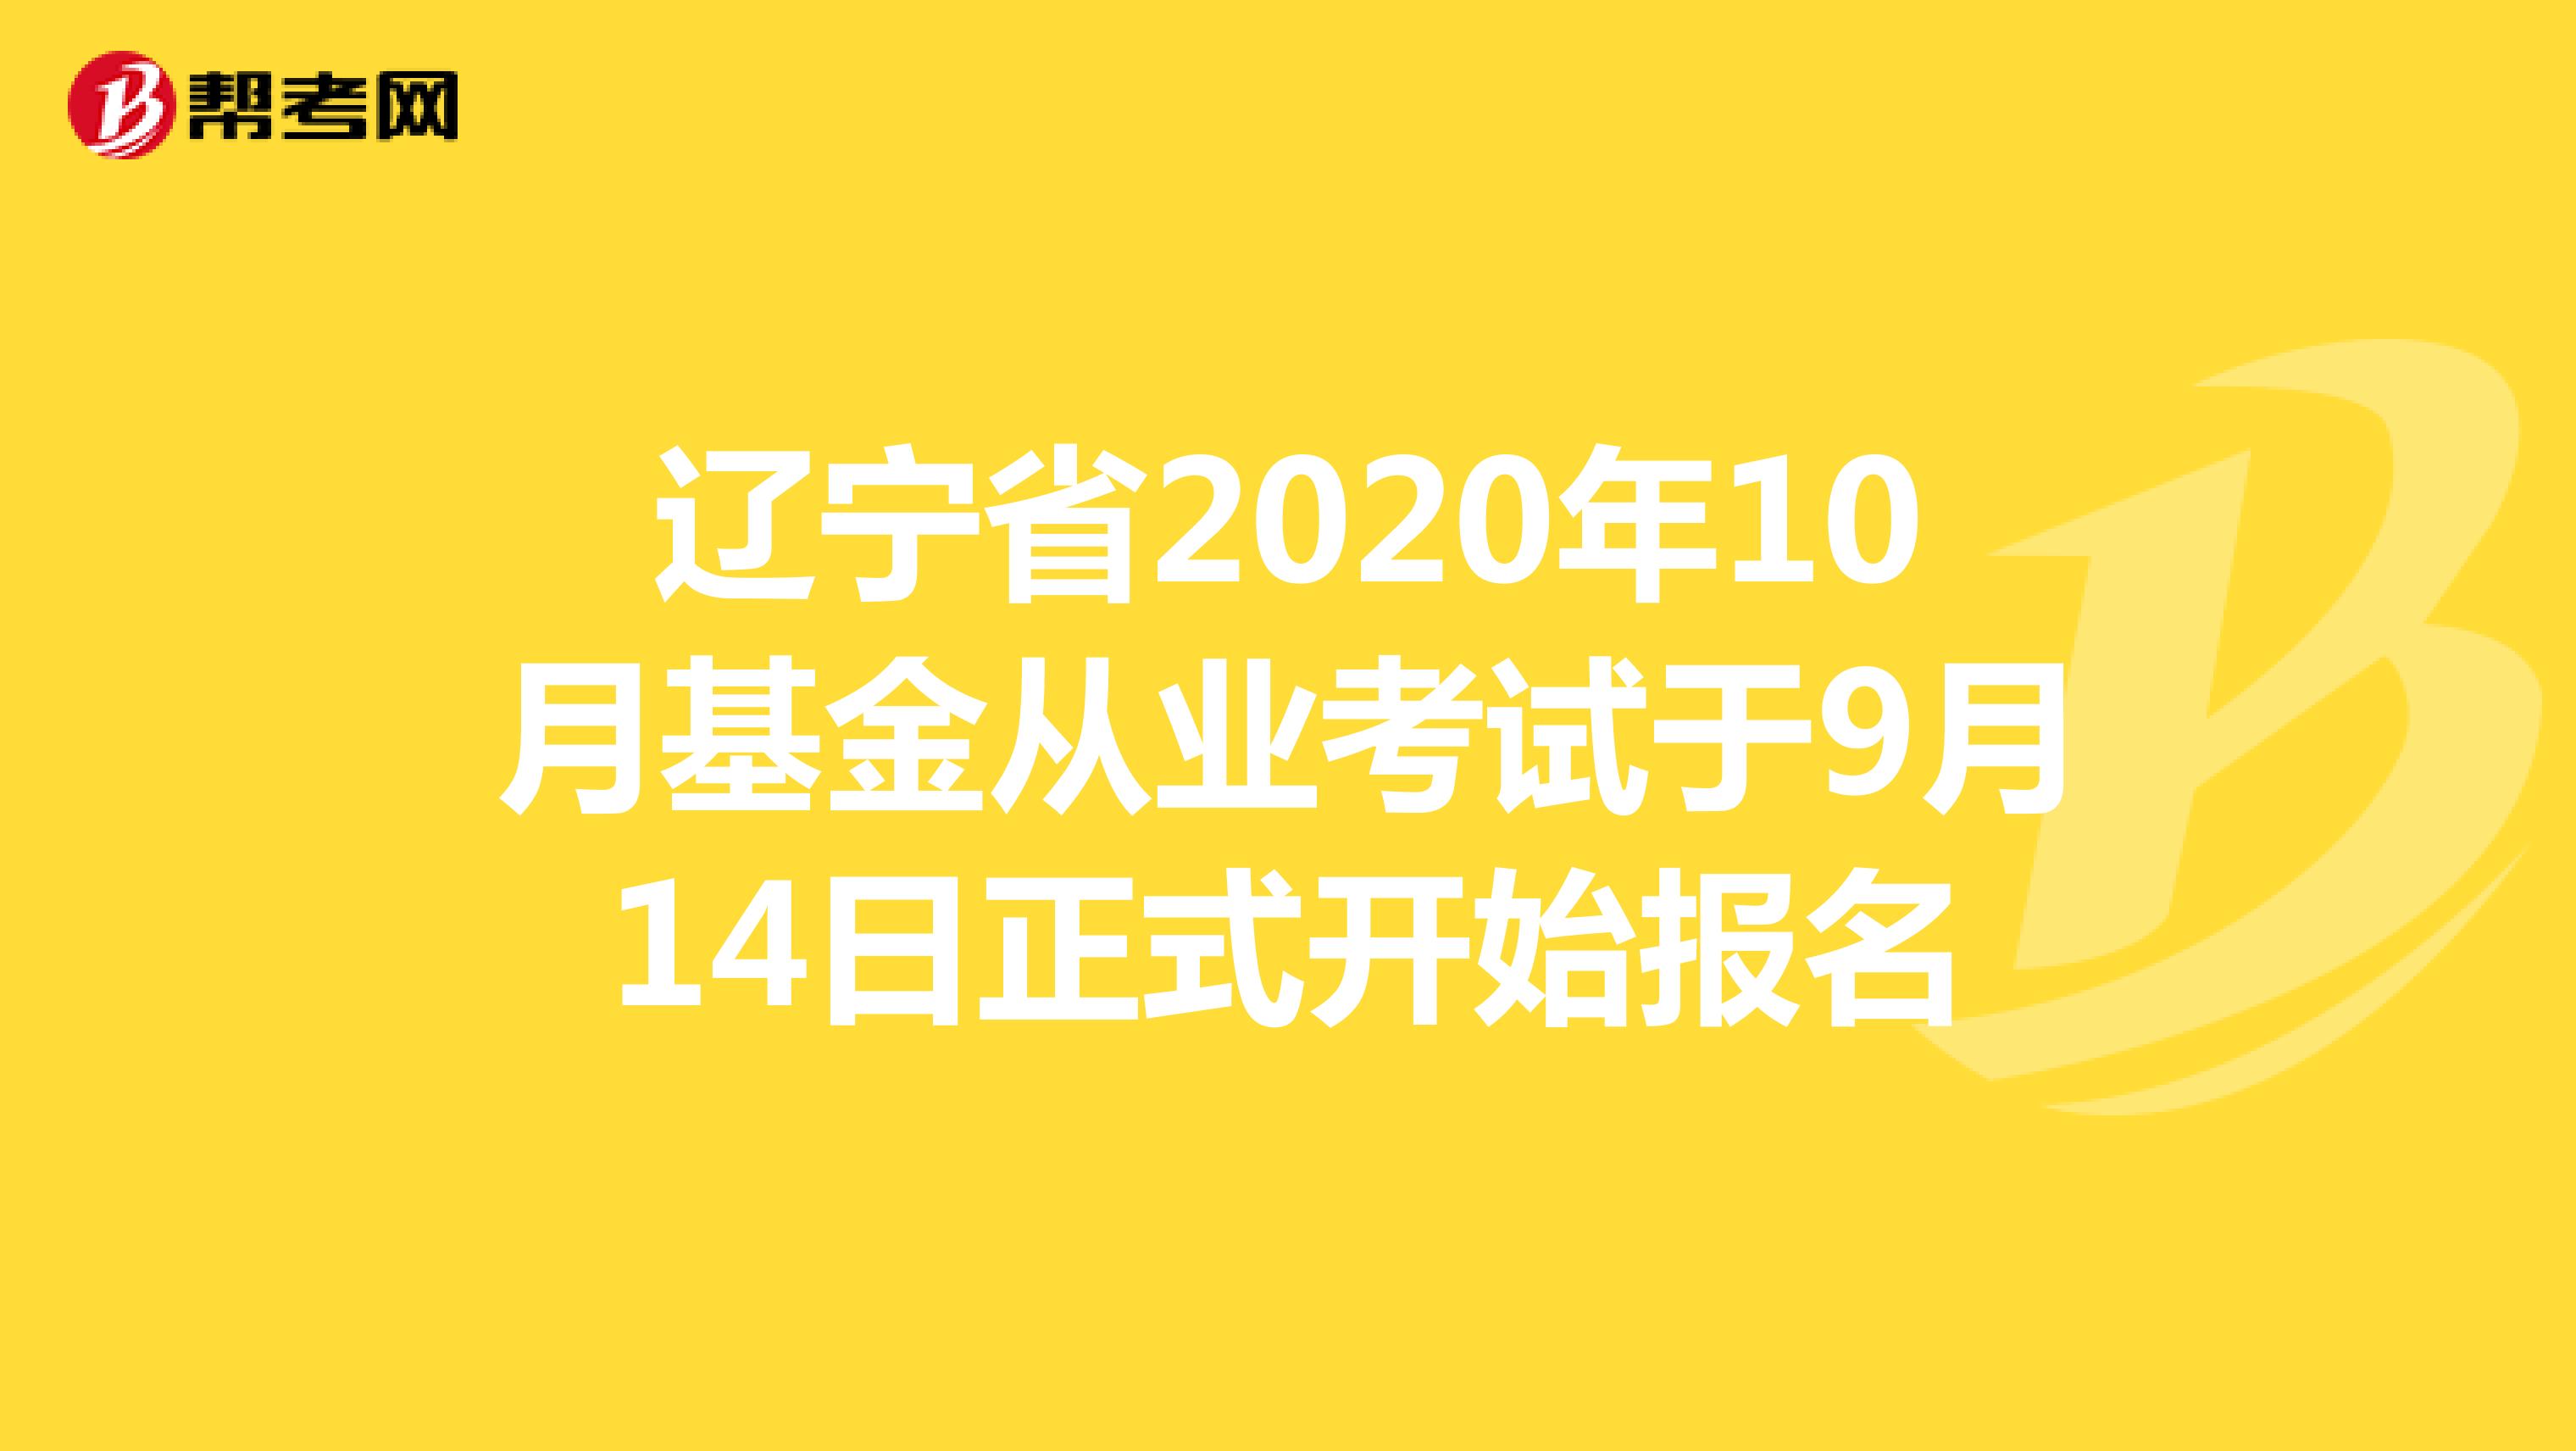 辽宁省2020年10月基金从业考试于9月14日正式开始报名